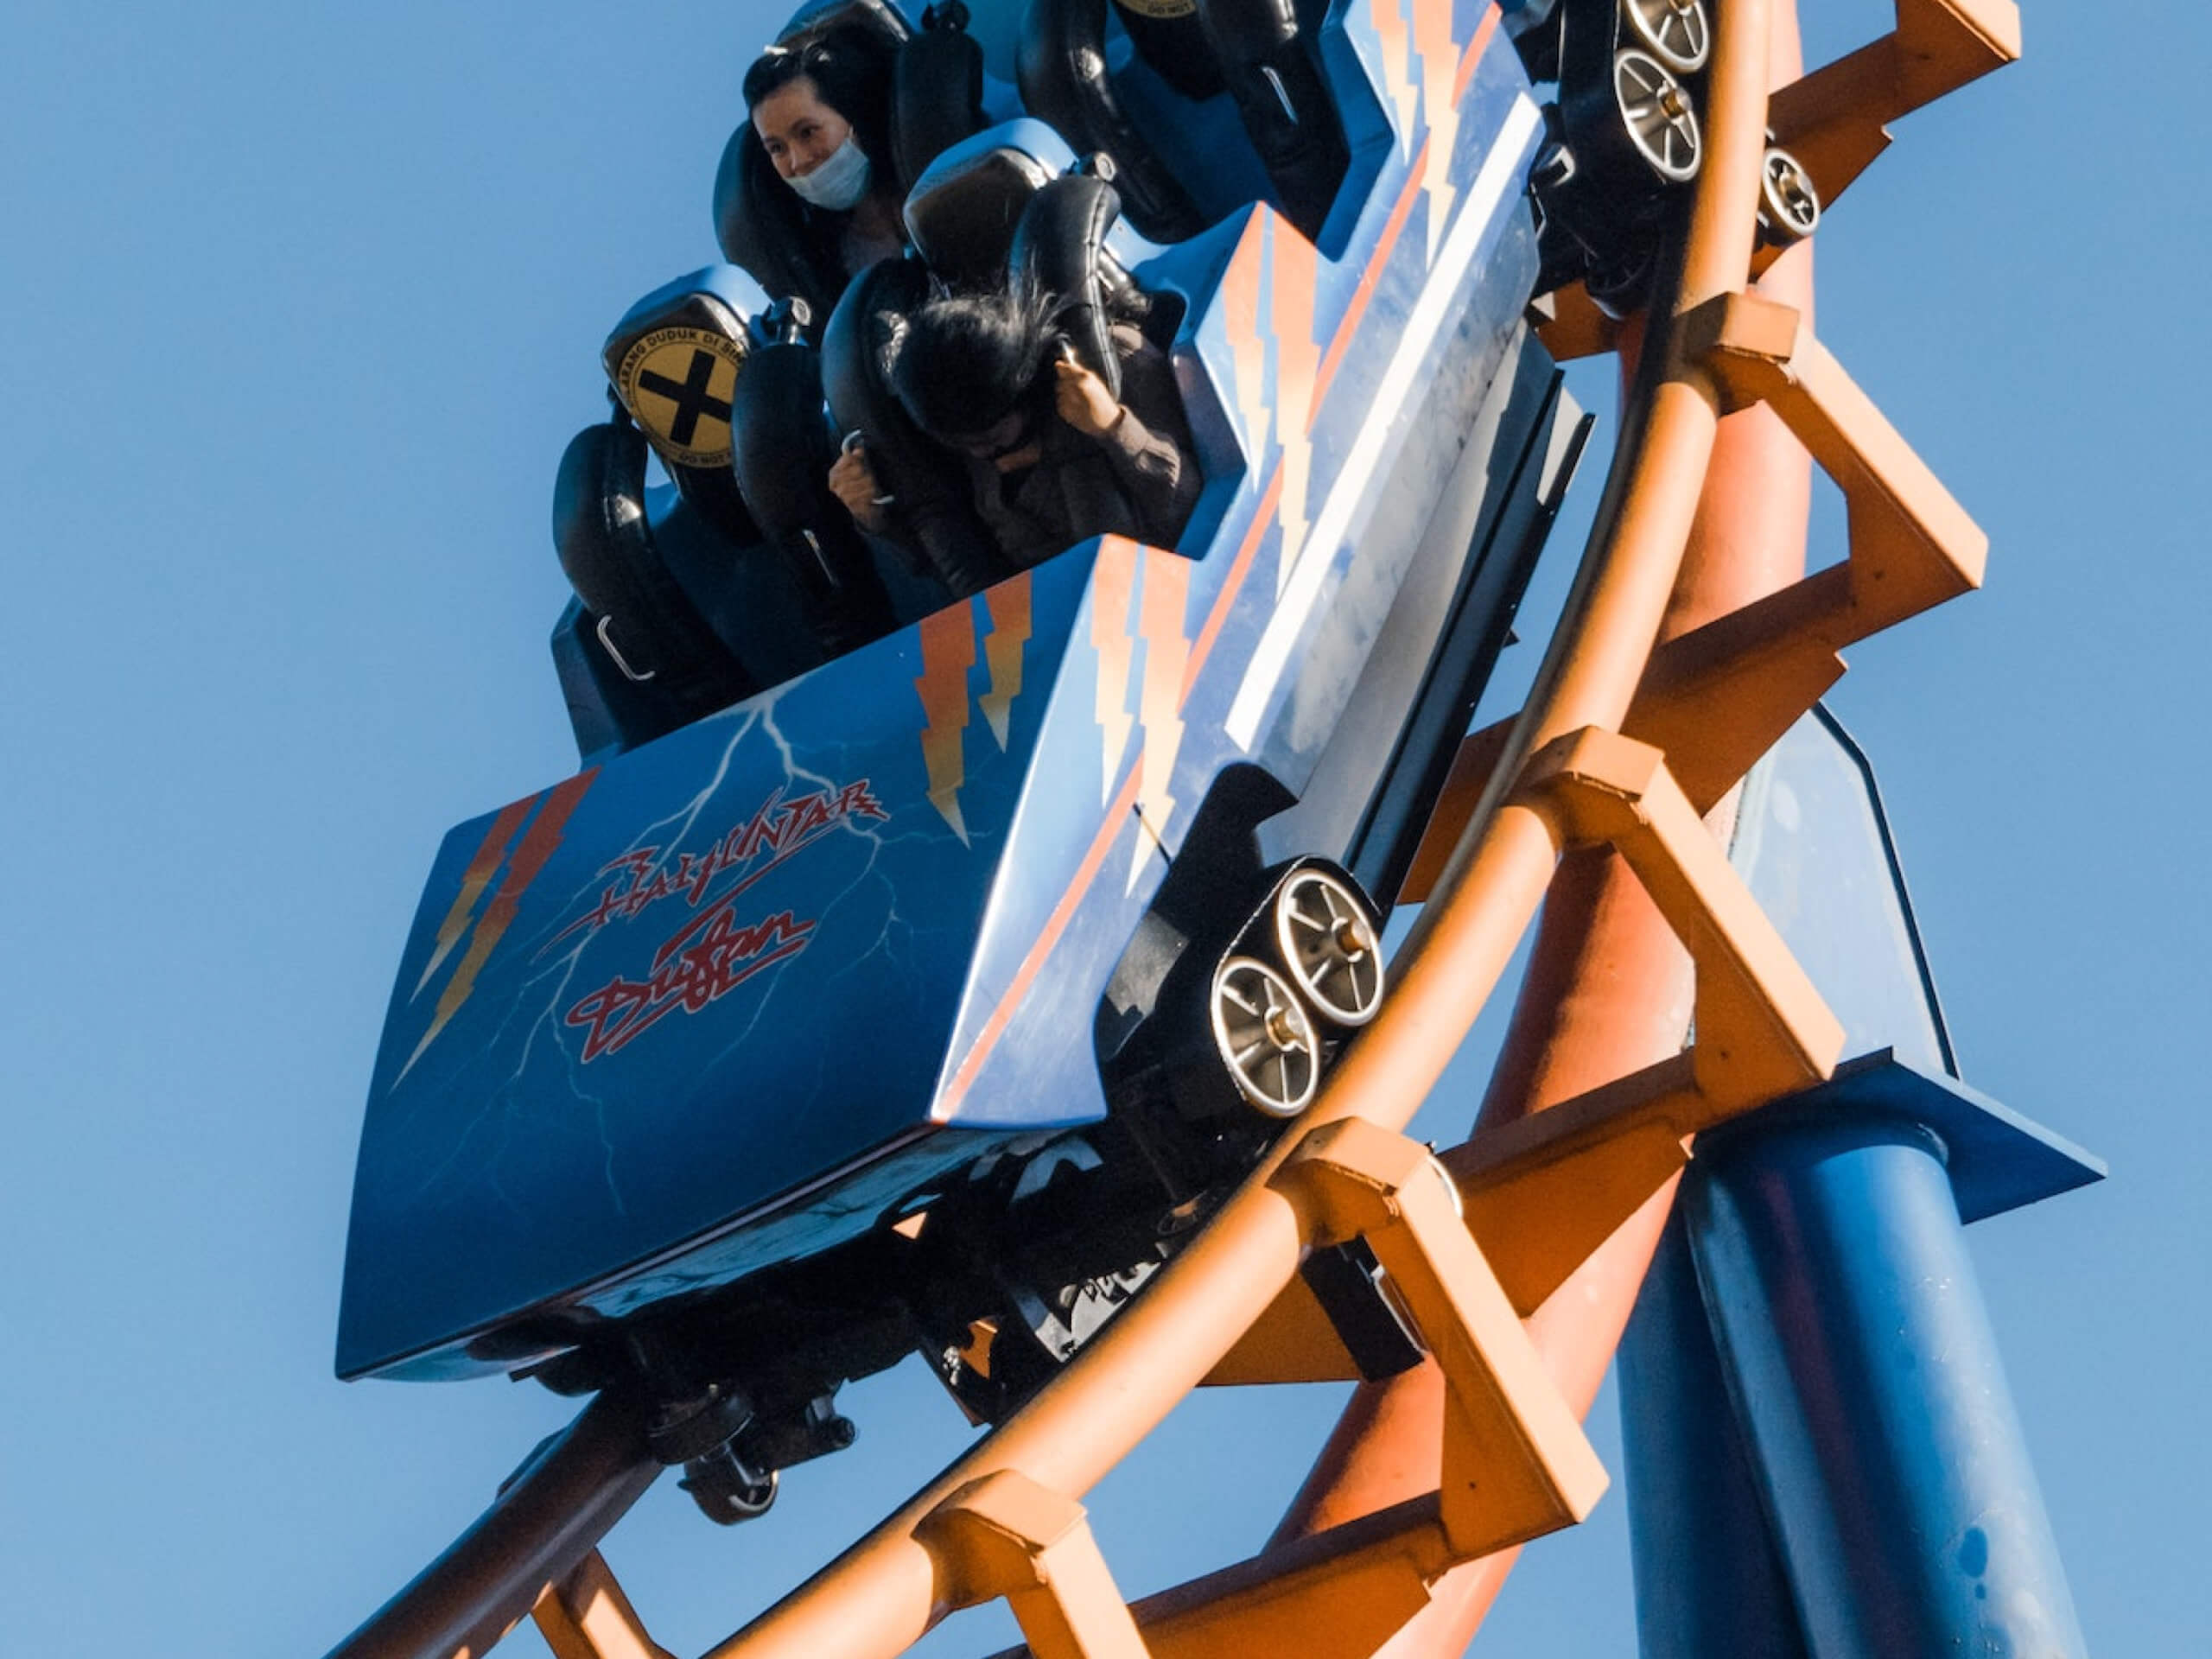 Rebonding polyurethane wheels on a roller coaster ride